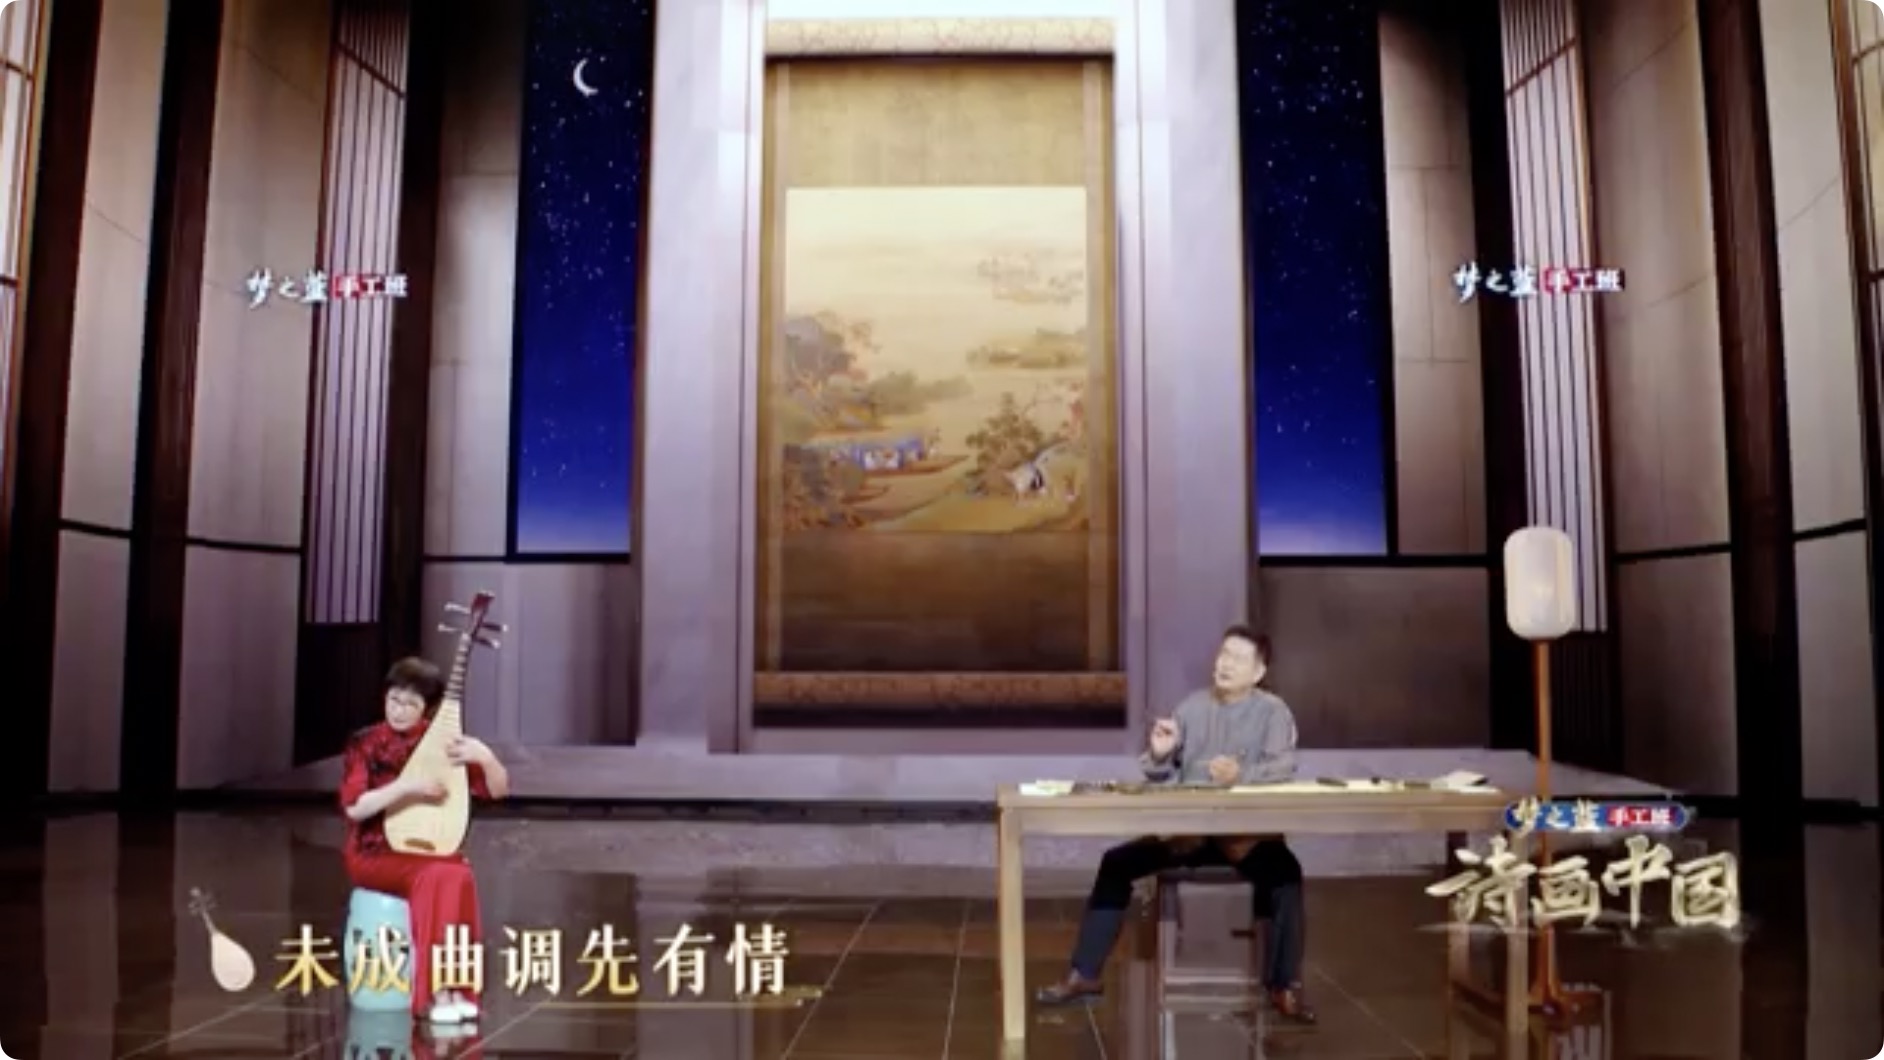 Music recitation of Pipa Xing by Pu Cunxin and Wu Yuxia. /CGTN